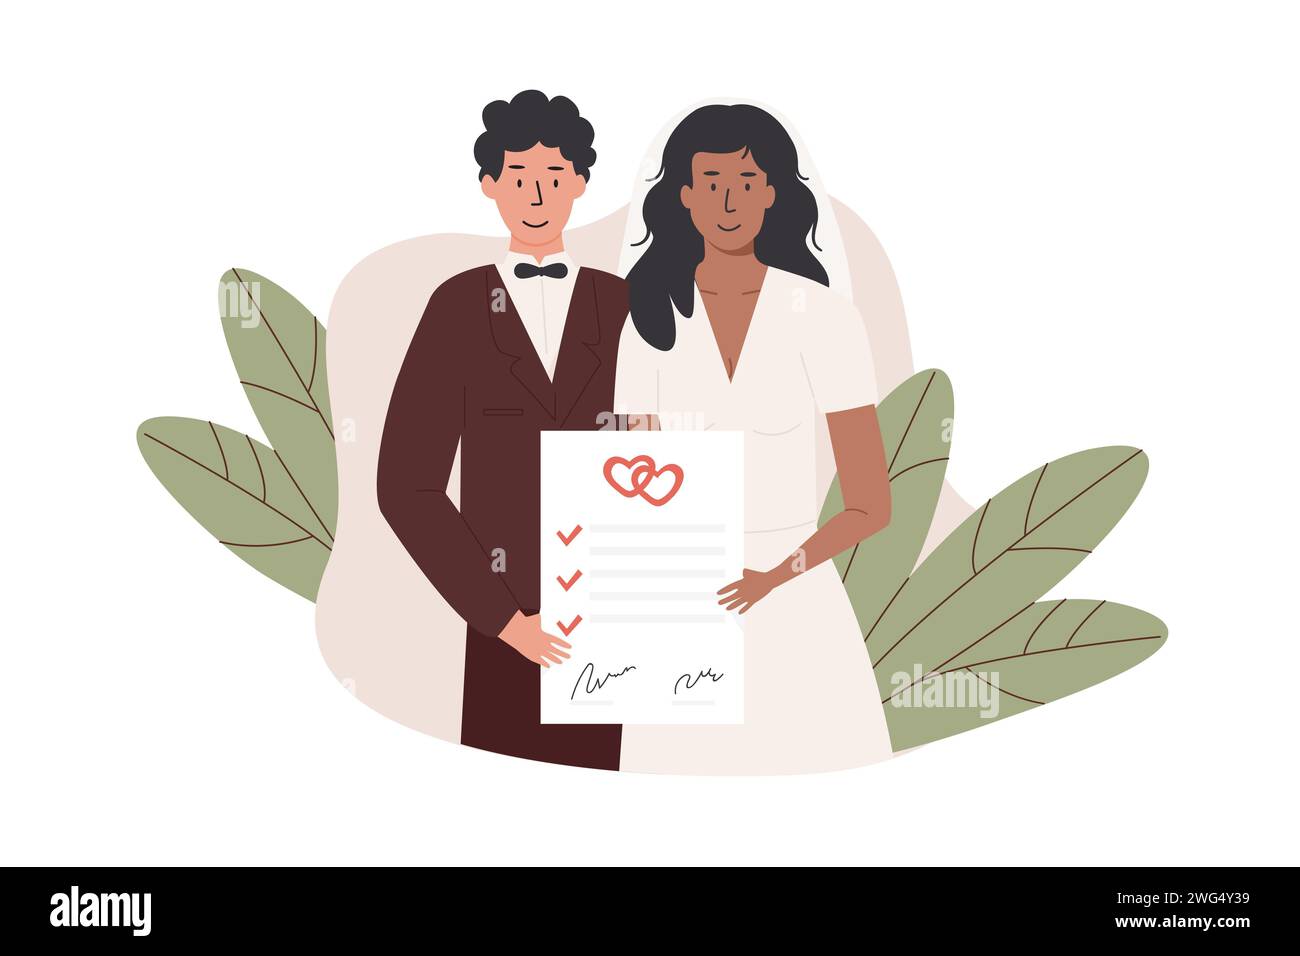 Ein Bräutigam und eine Braut haben einen Ehevertrag unterzeichnet. Interrassisch verheiratetes Paar mit Ehevertrag. Frisch vermählt mit Ehevertrag certi Stock Vektor